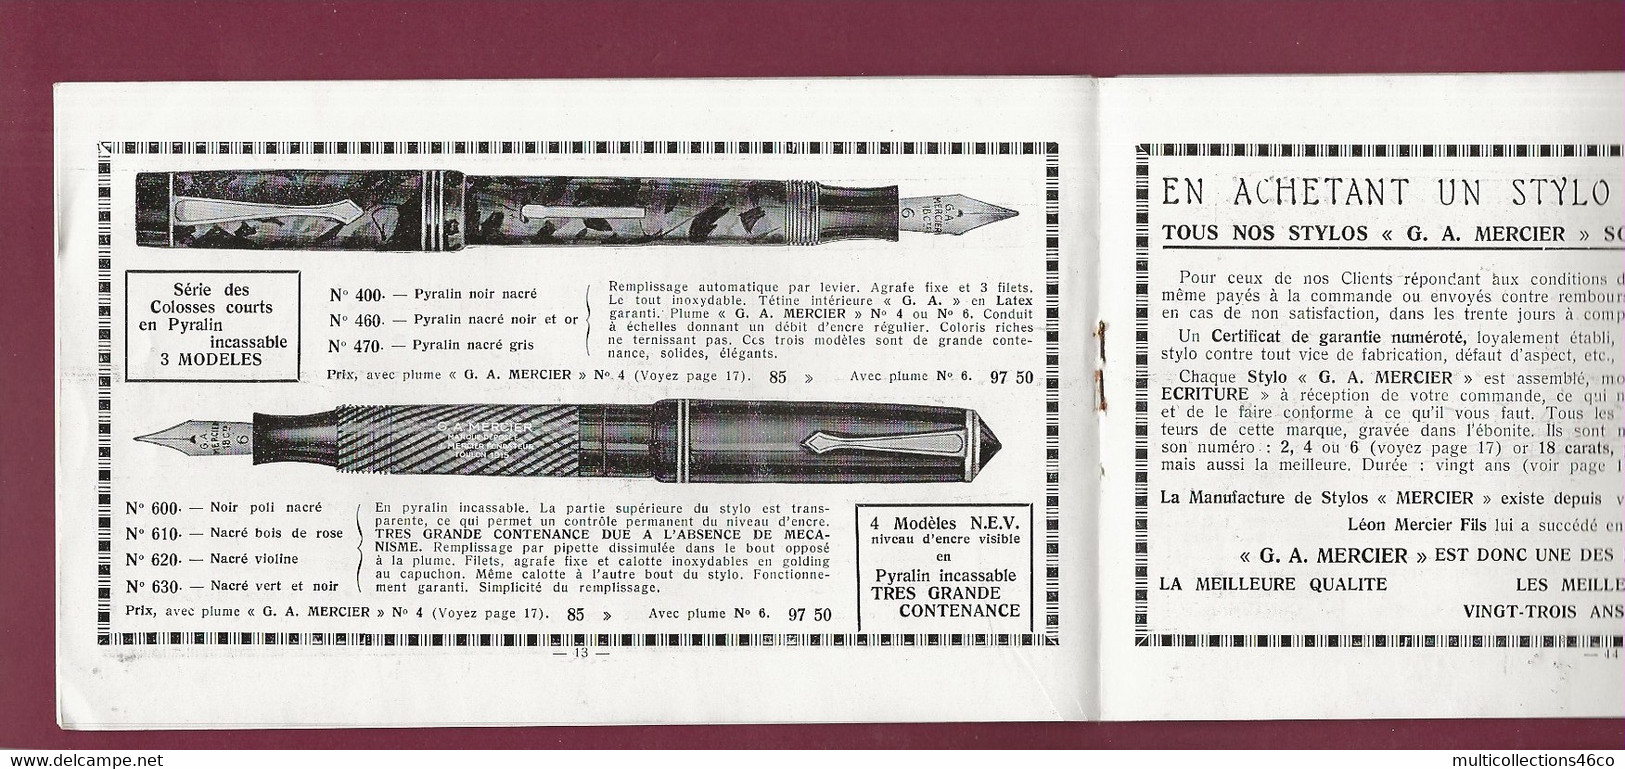 160121A - 1938 Catalogue Commercial STYLO L MERCIER à TOULON - Papeterie Plume - Drukkerij & Papieren